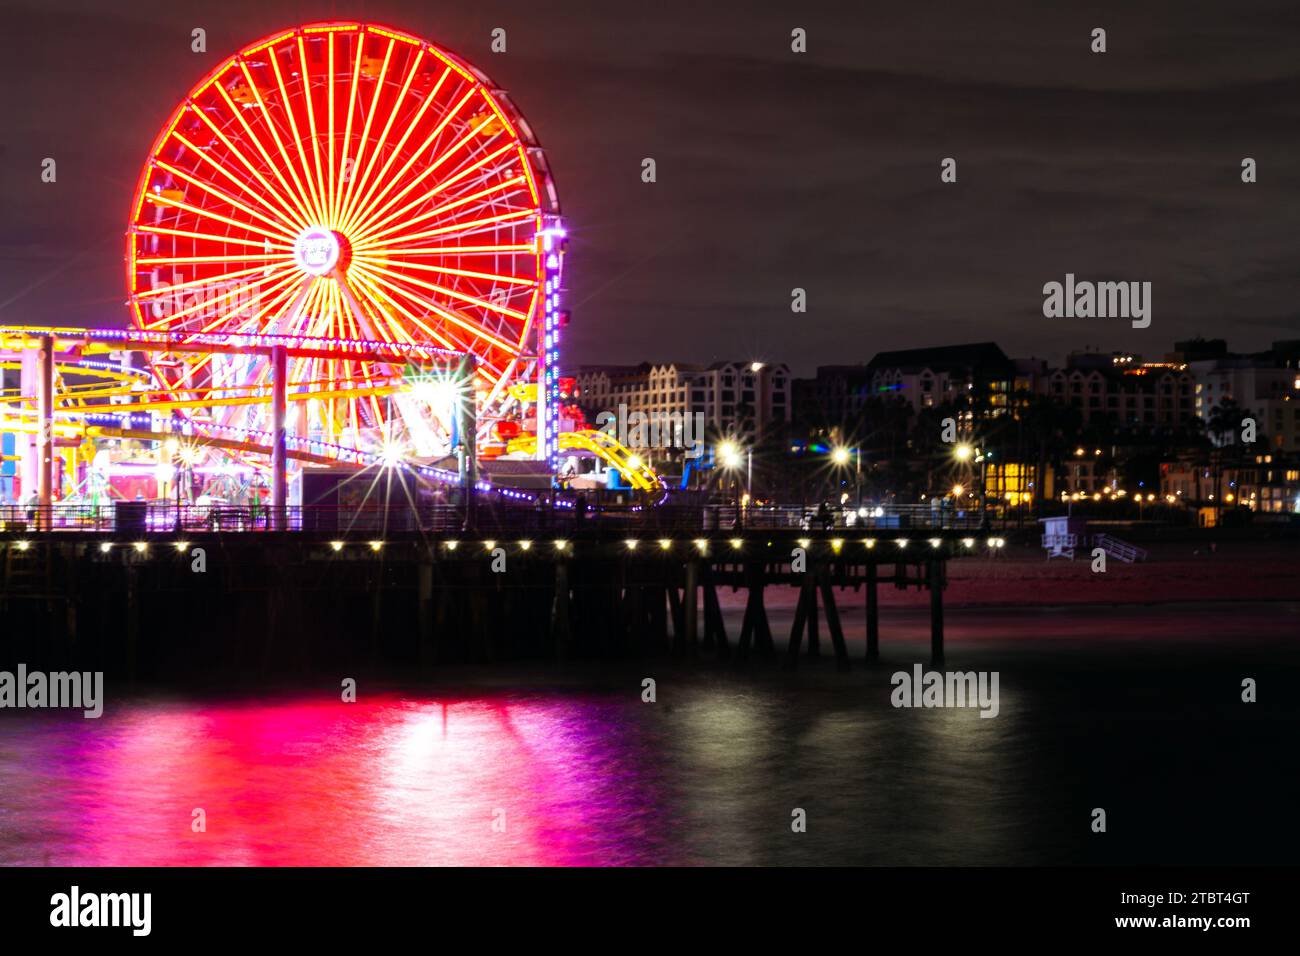 Pacific Park am Santa Monica Pier, Santa Monica, Kalifornien, mit dem Riesenrad und der Achterbahn, die bei Nacht im Ozean reflektiert wird Stockfoto